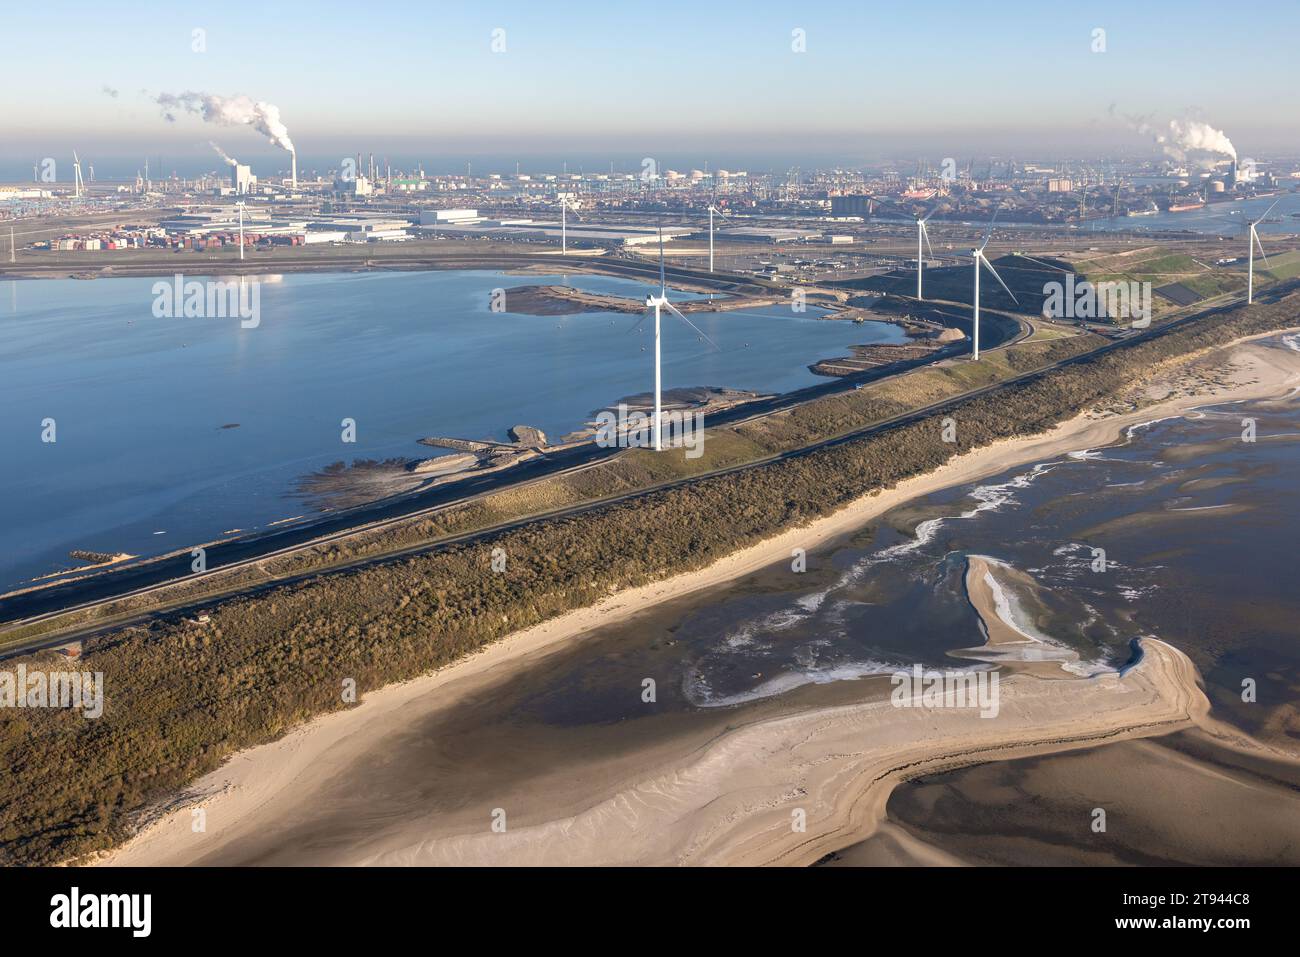 Vue aérienne Côte néerlandaise avec zone industrielle Maasvlakte dans le port de Rotterdam. Usine chimique à l'horizon Banque D'Images